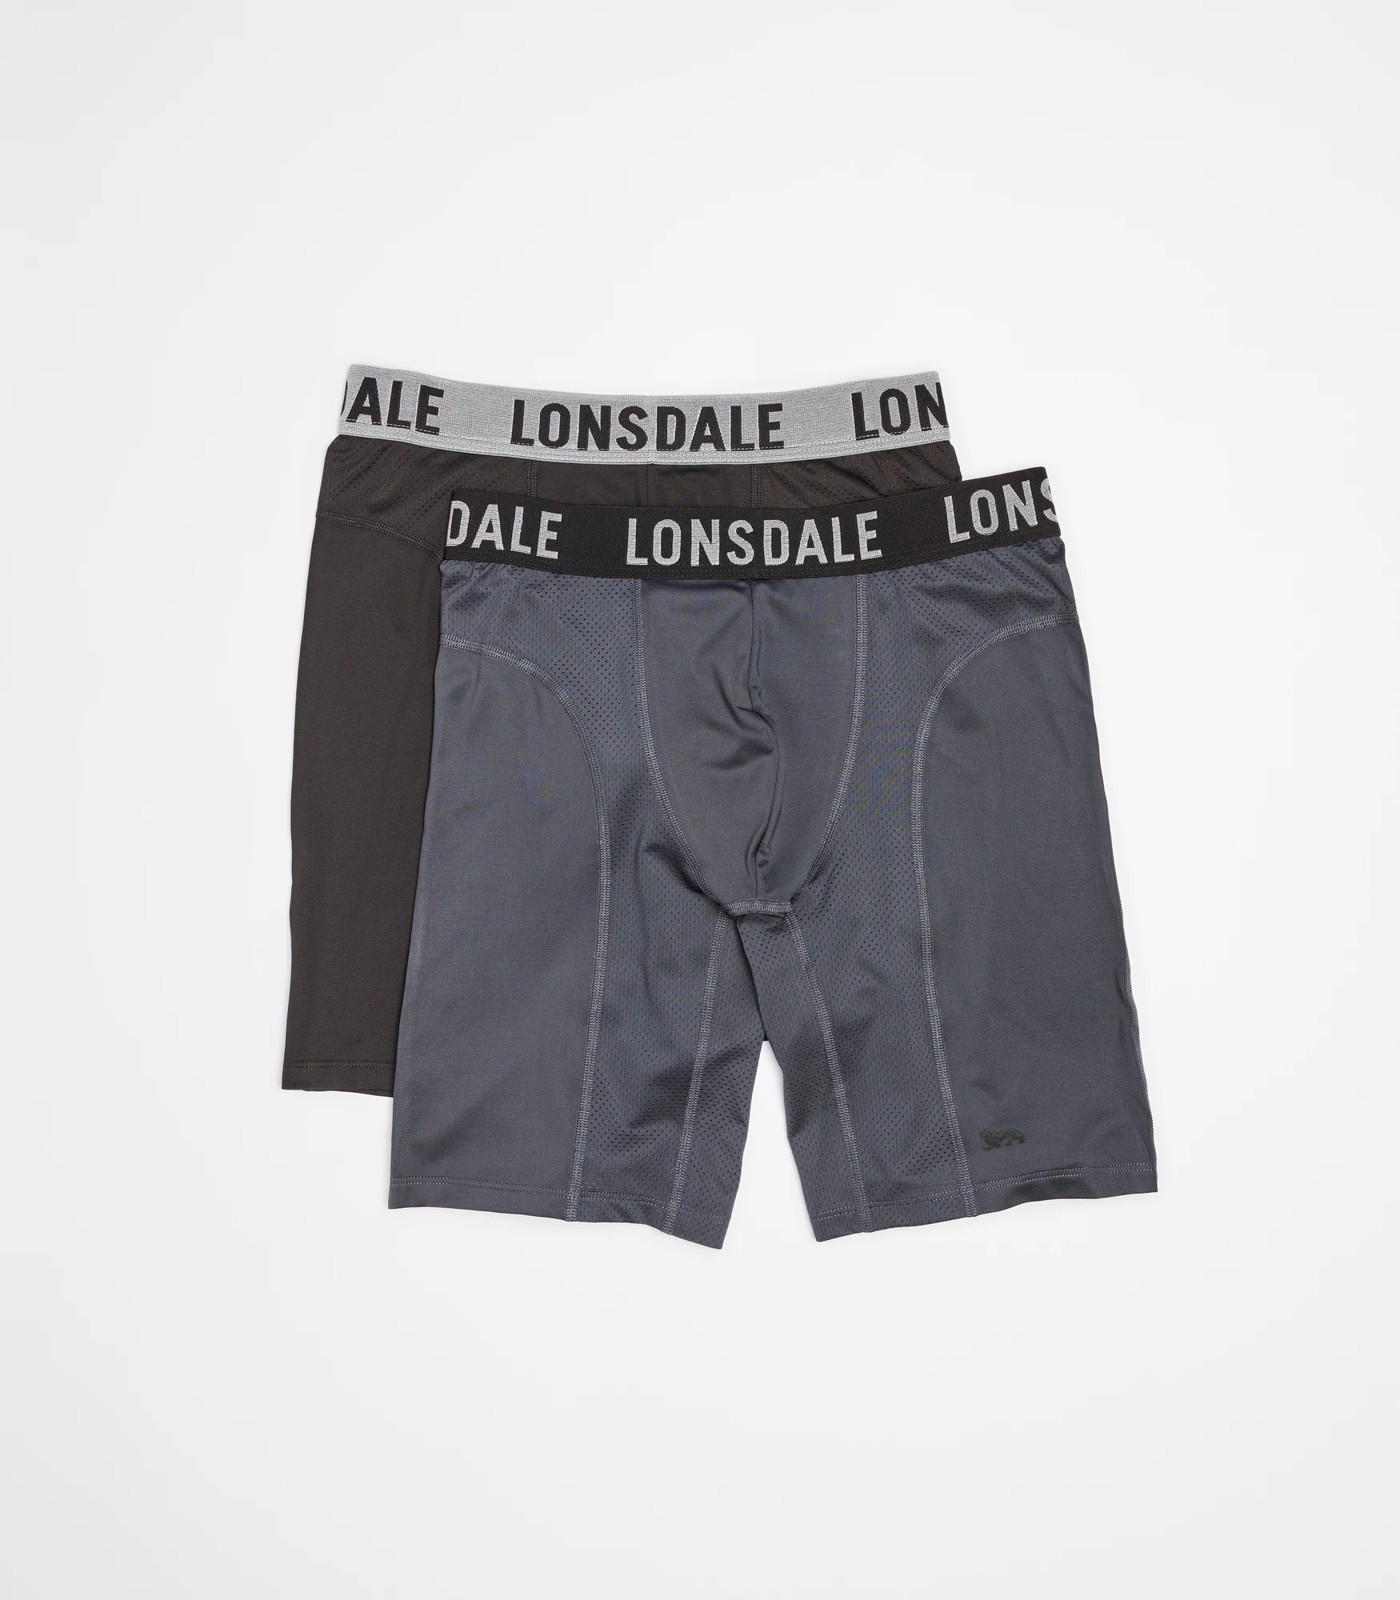 Lonsdale London Long Leg Trunks - 2 Pack | Target Australia